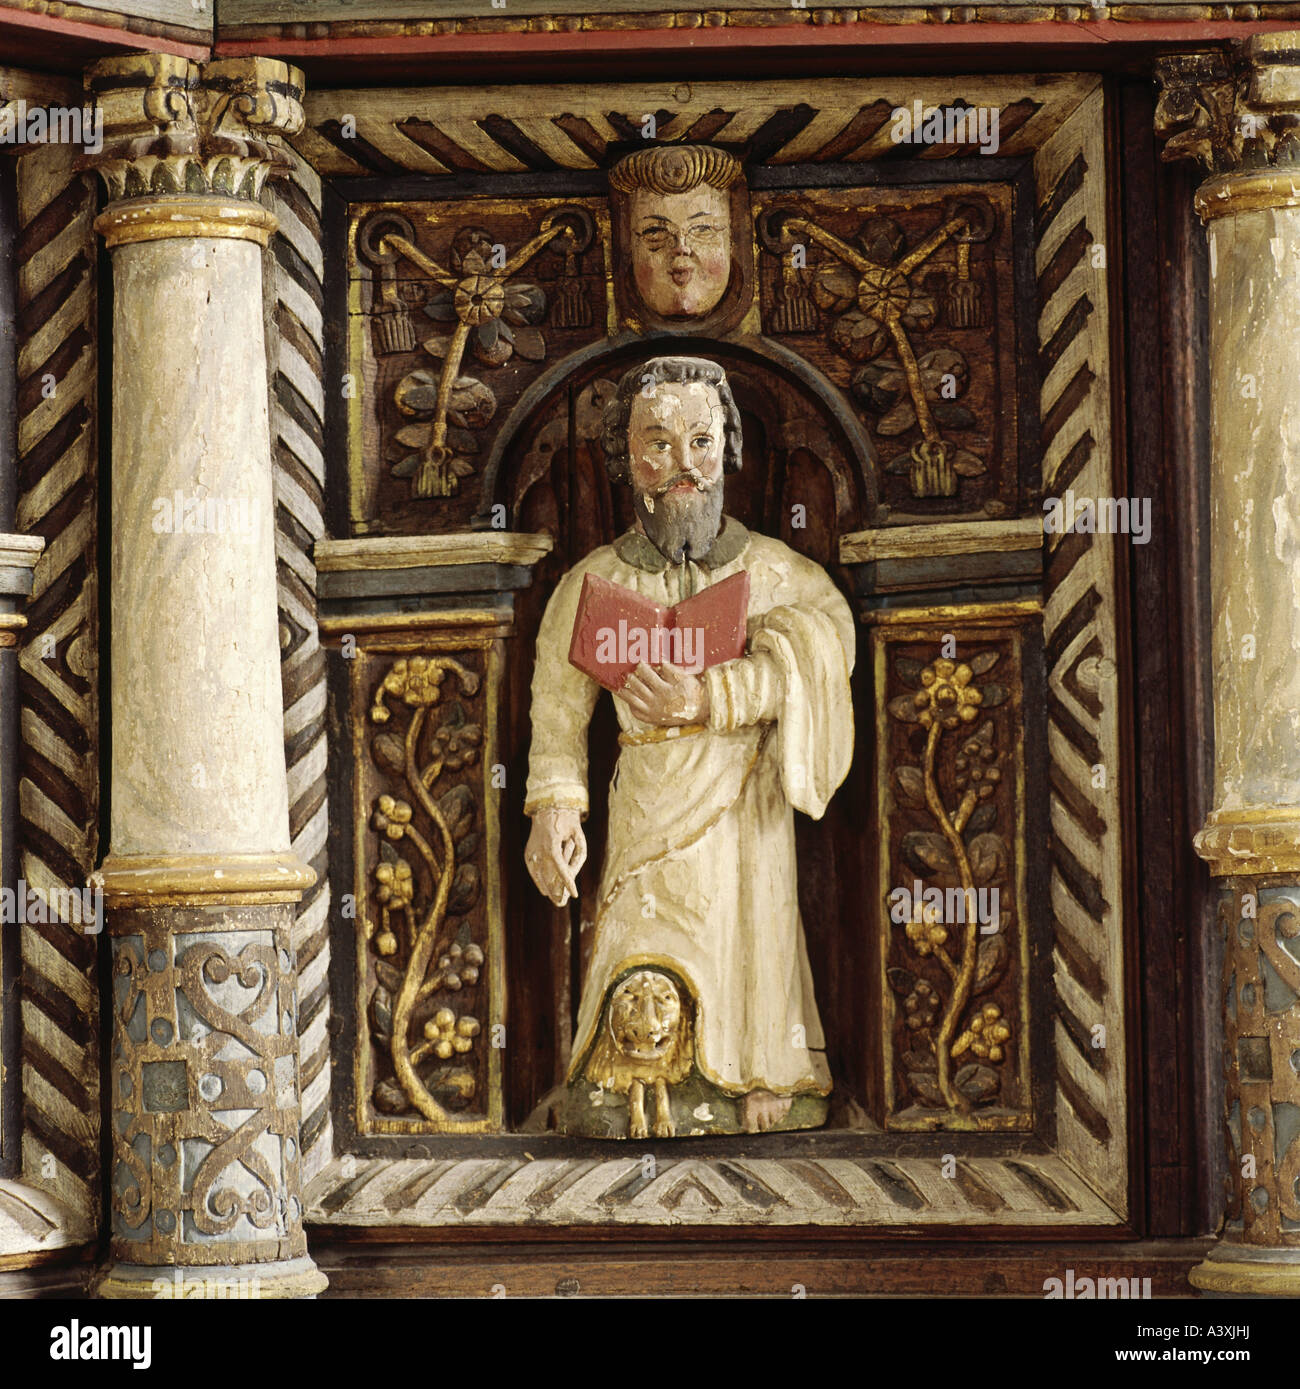 Belle arti, l'arte religiosa, Santi Marco Evangelista, scultura, legno dipinto, secolo XVII, pulpito di prua, cappella di legno di Amsberg Foto Stock